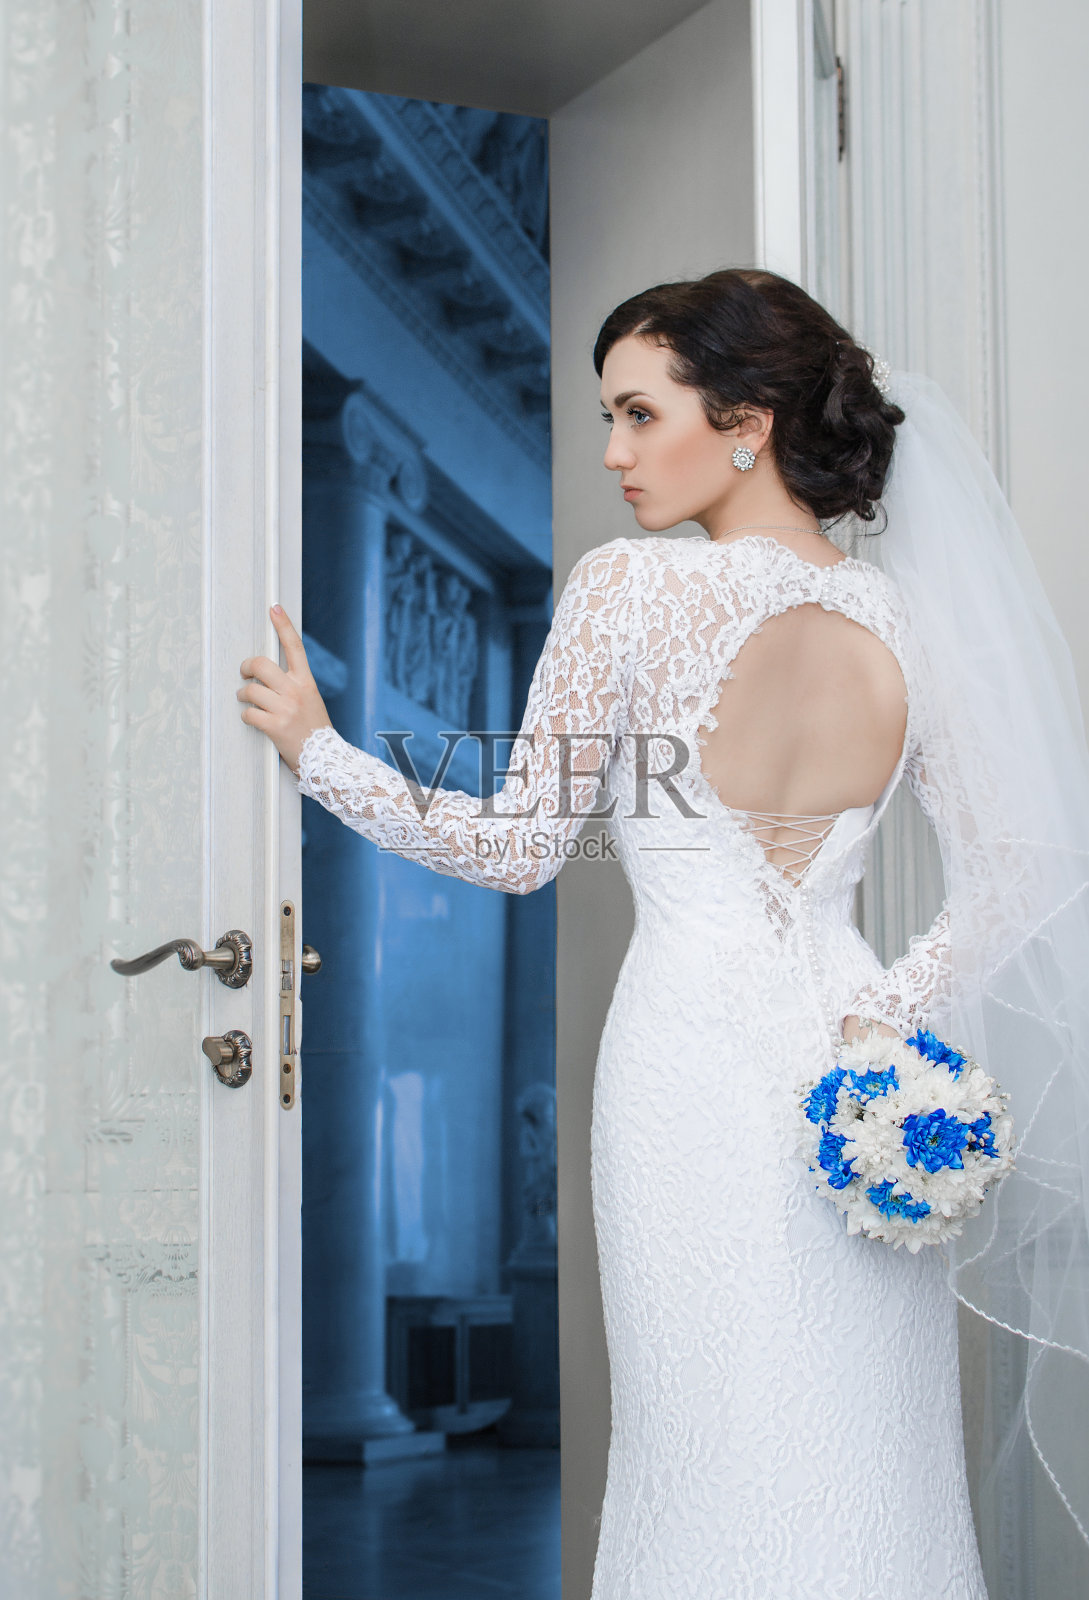 年轻的新娘捧着一束婚纱站在门口照片摄影图片